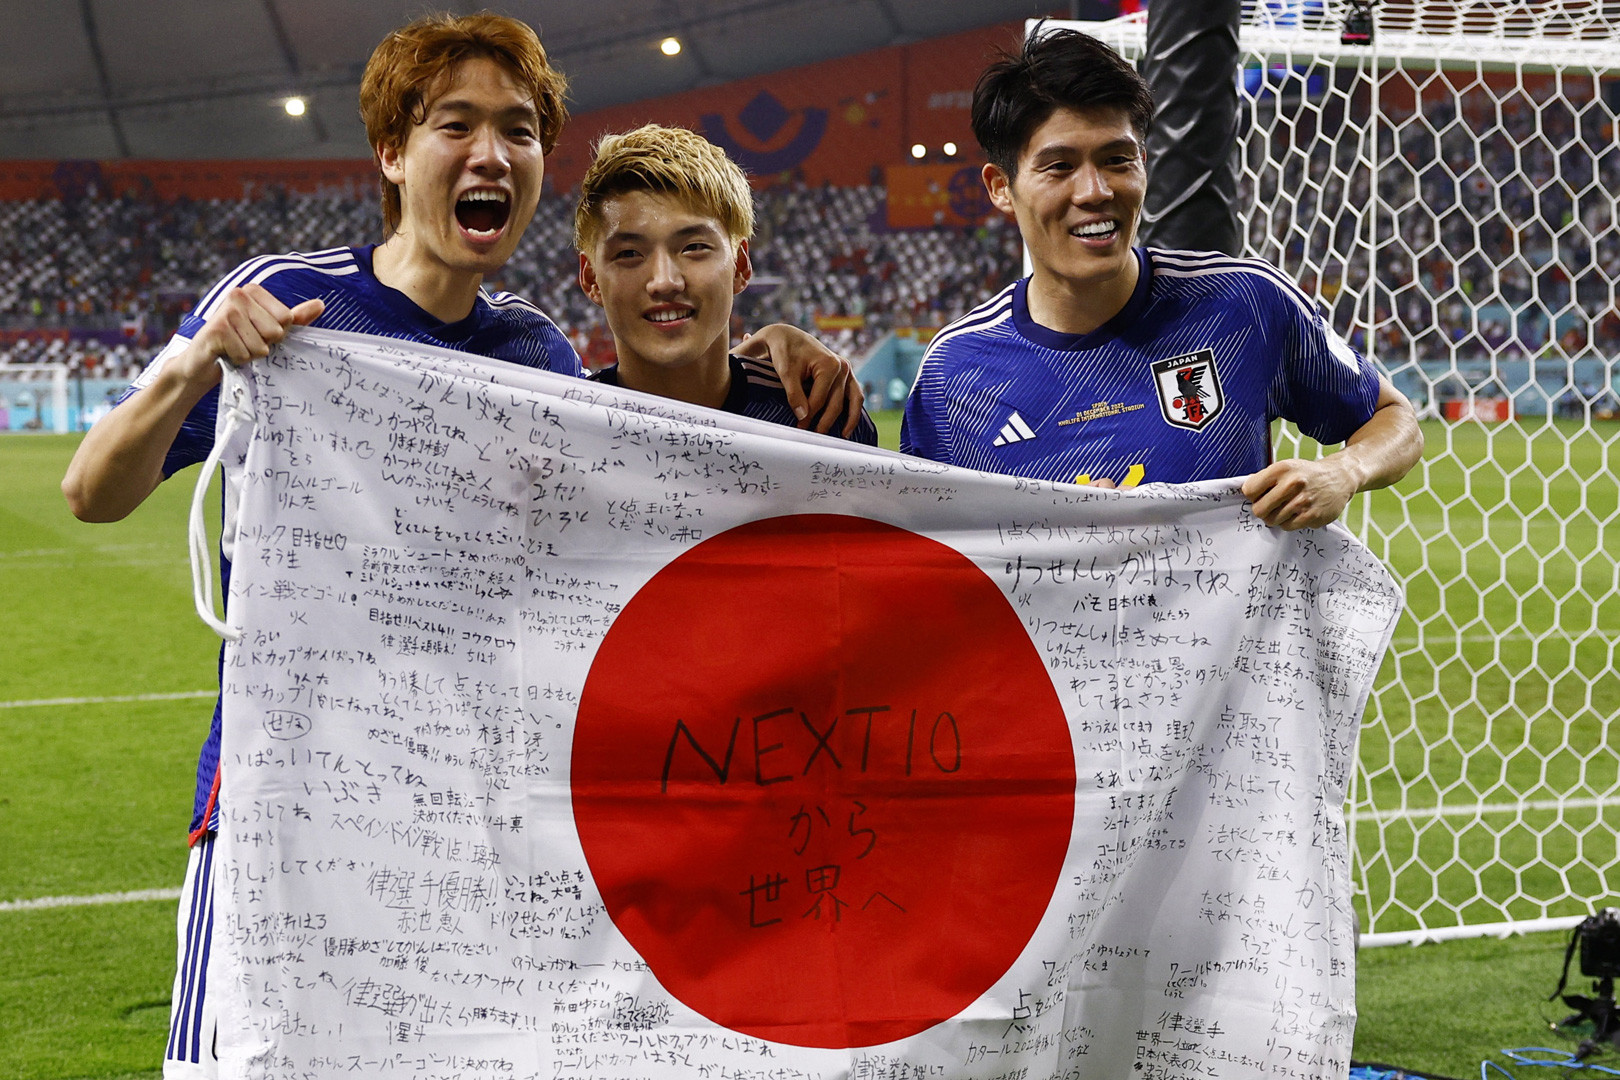 Sau Australia, Nhật Bản là đội thứ 2 ở châu Á góp mặt ở vòng 16 đội World Cup 2022